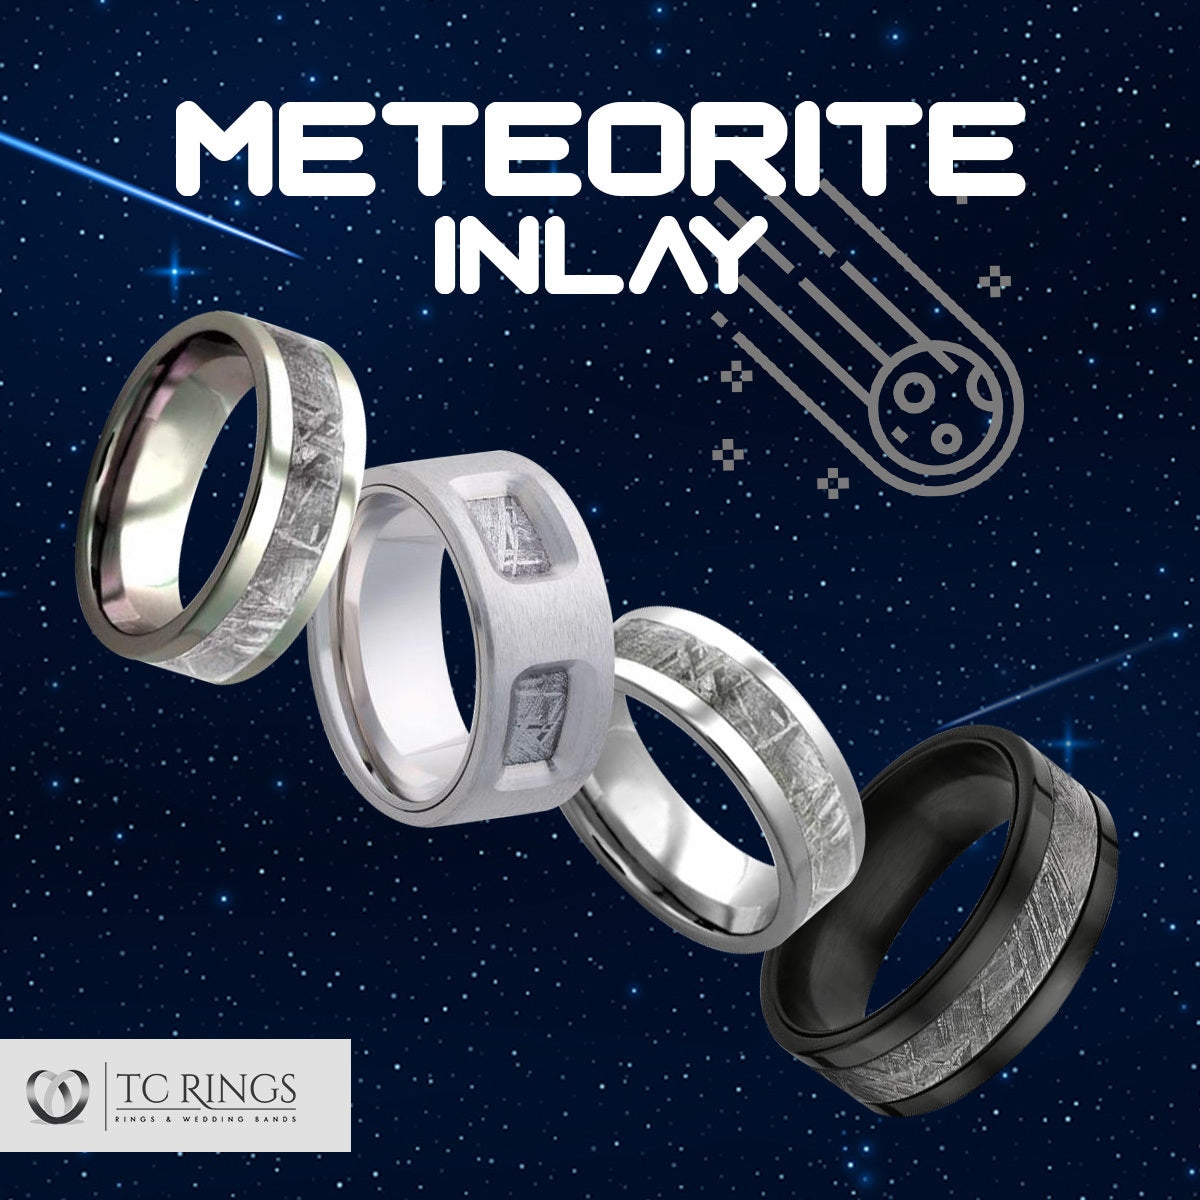 Meteorite Rings & Wedding Bands